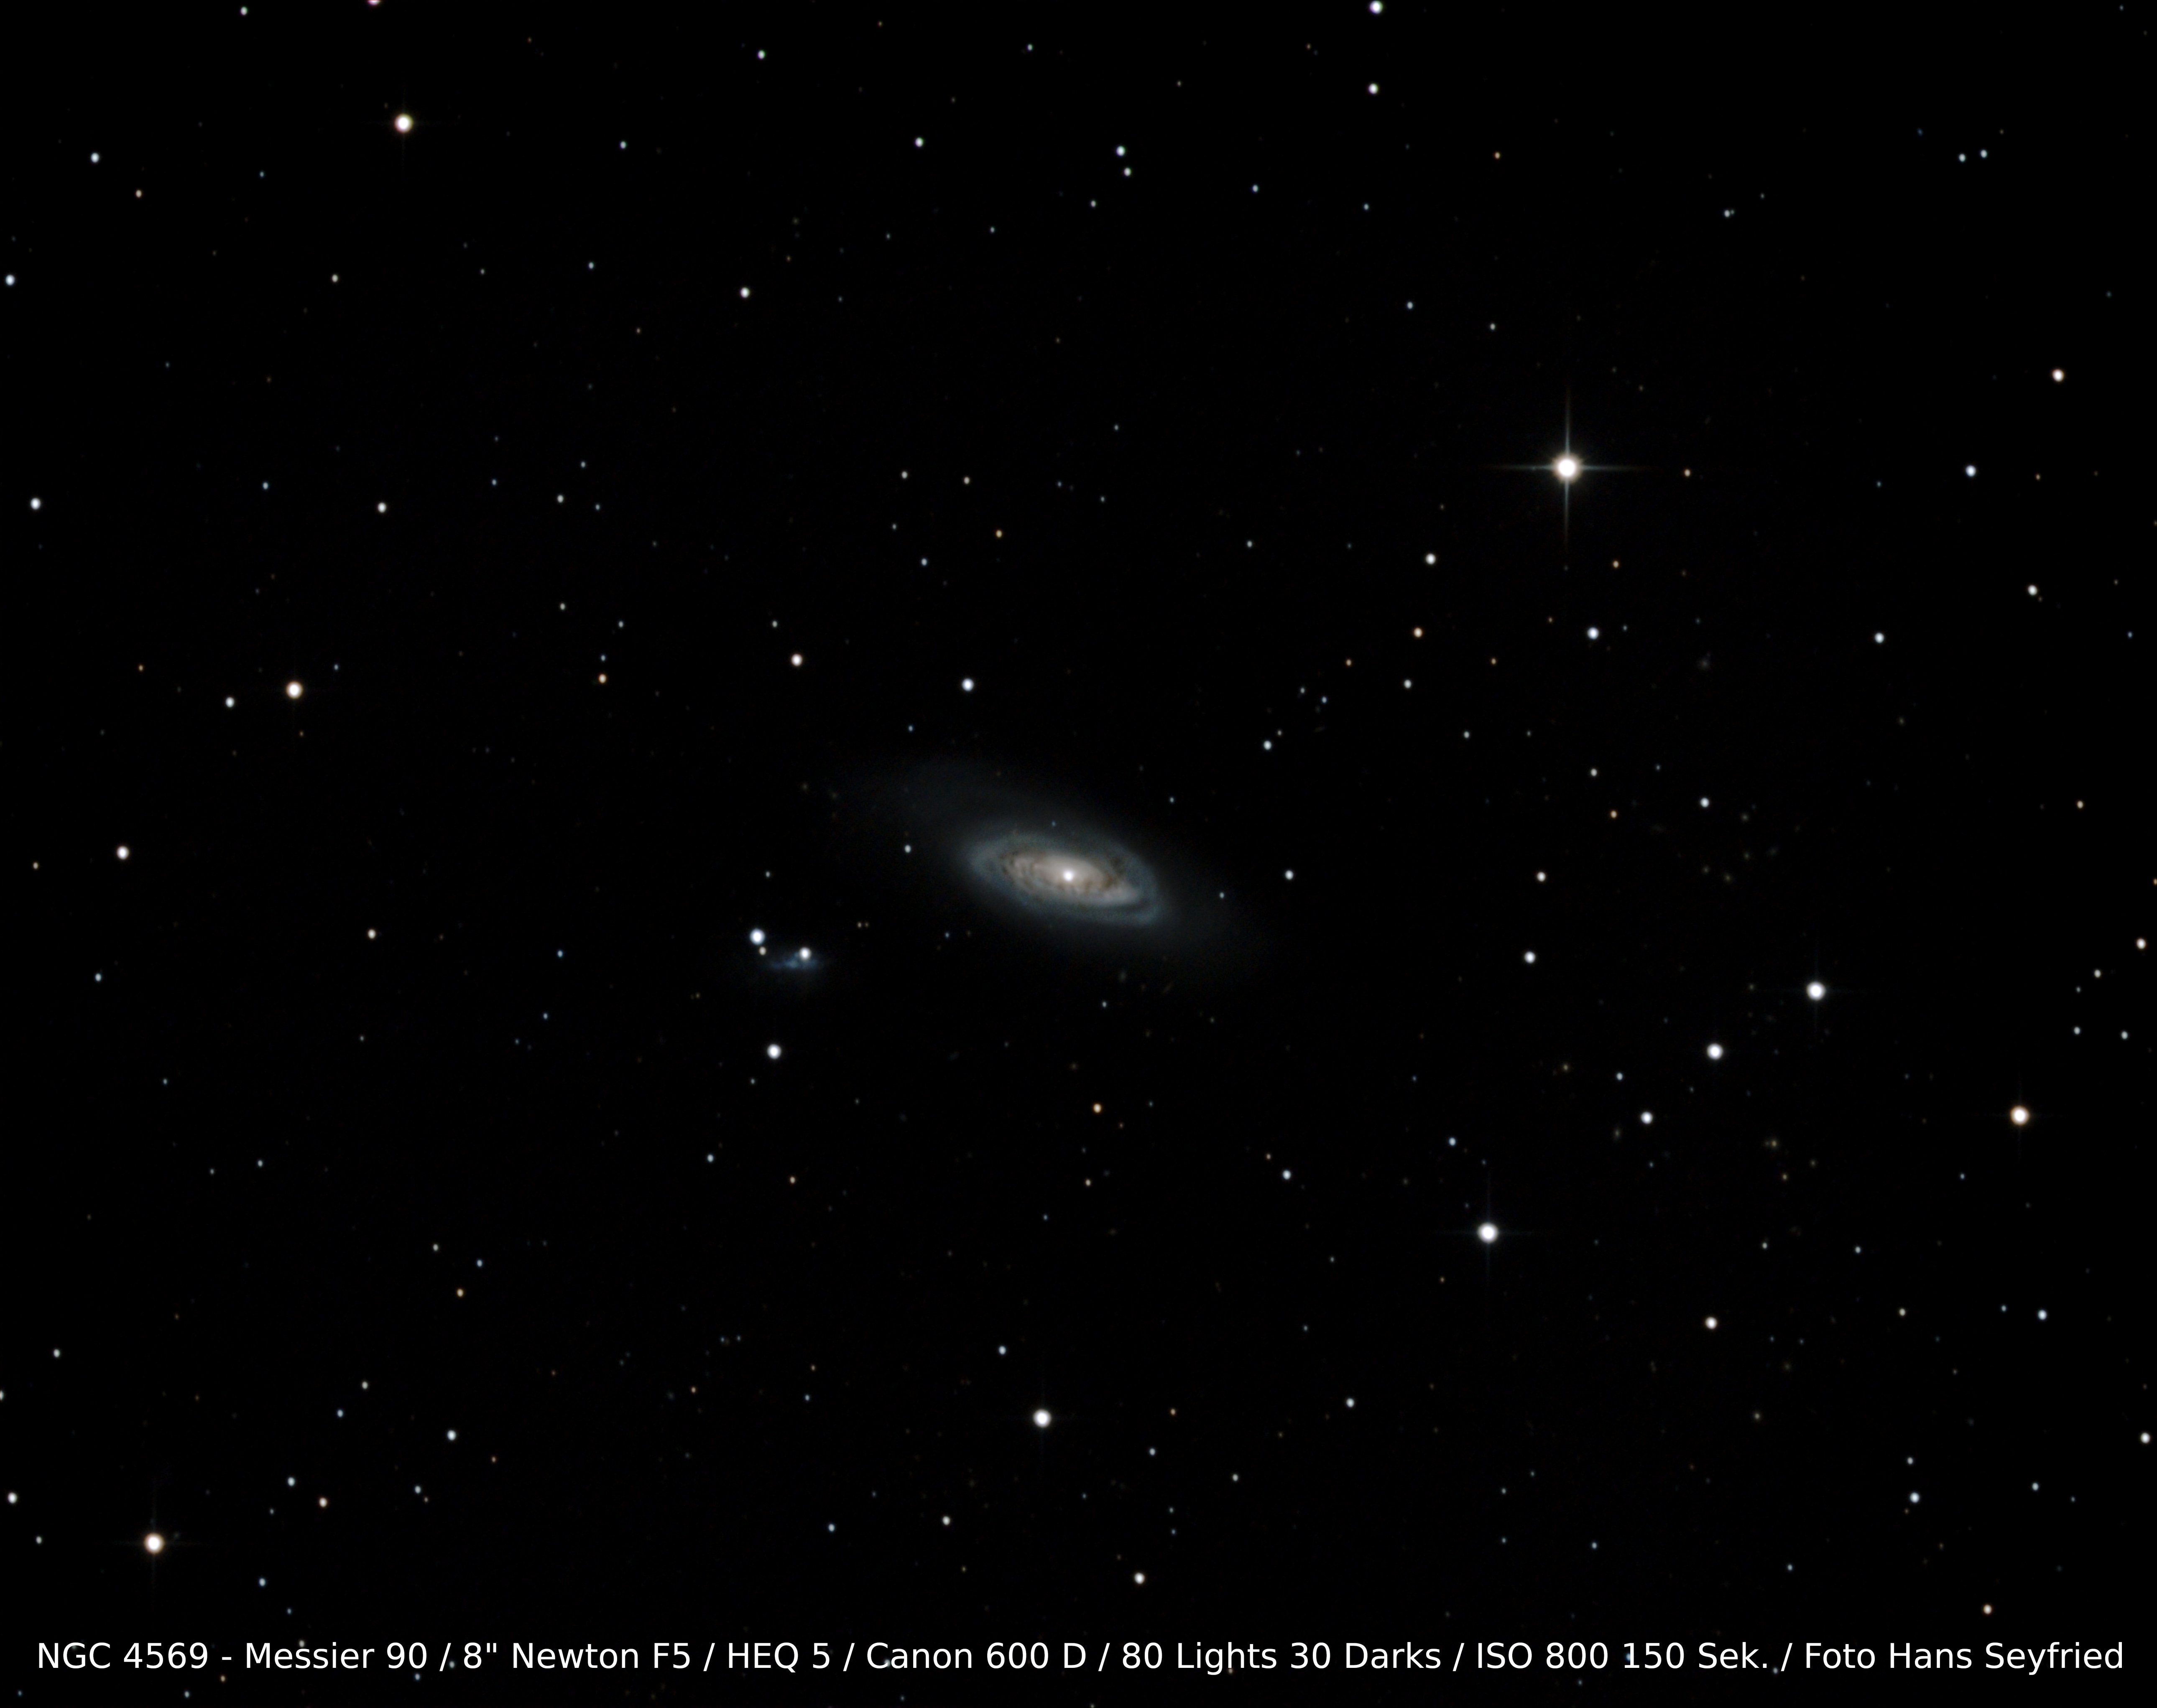 NGC 4569 M90